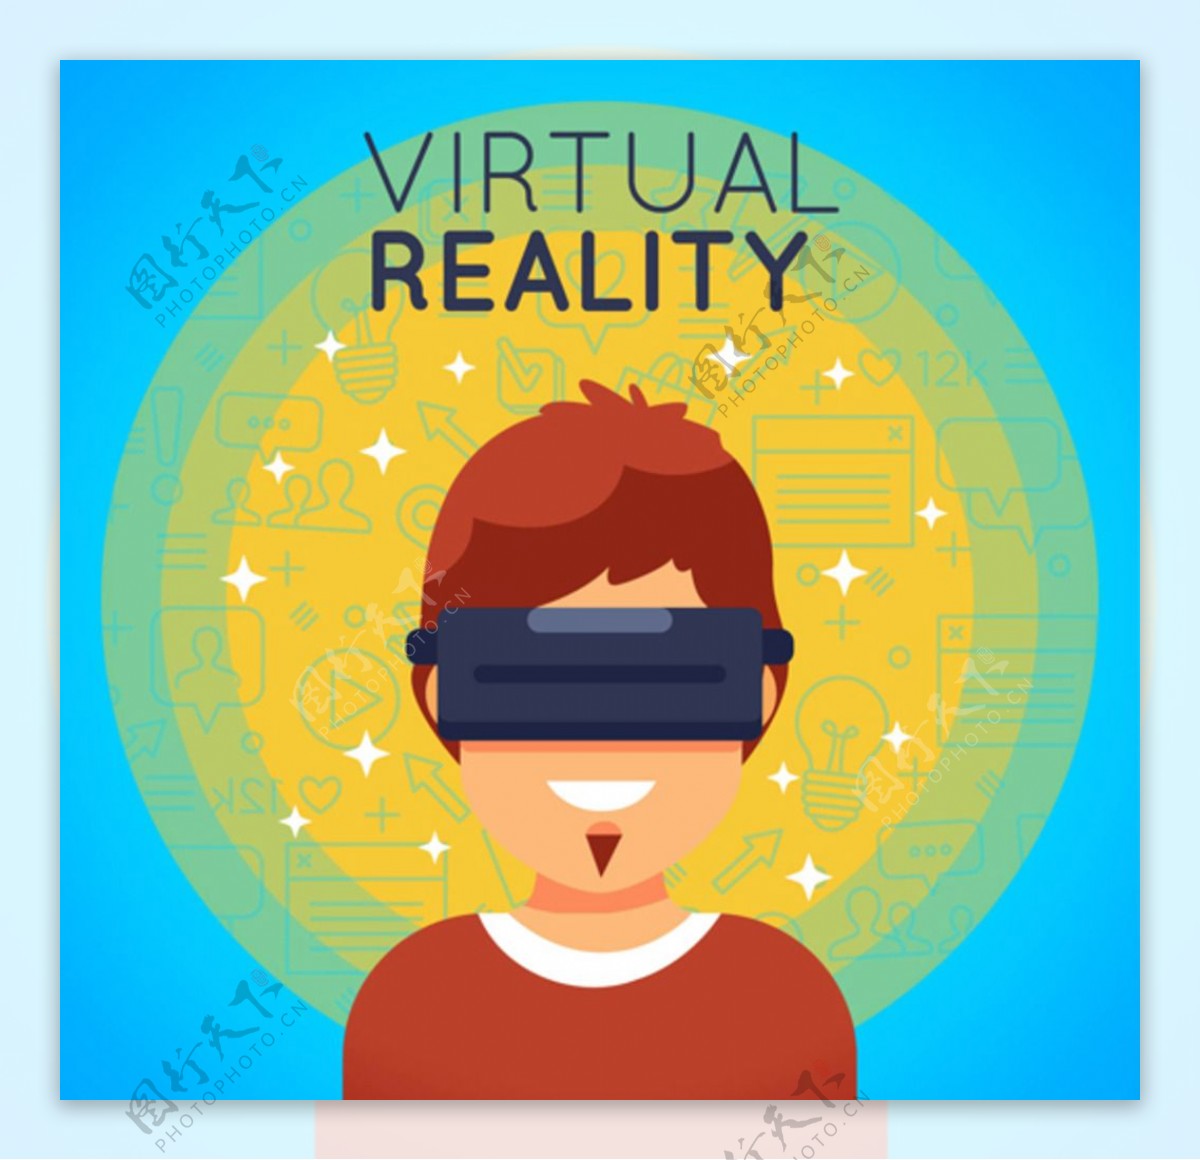 戴VR虚拟现实眼镜的男子